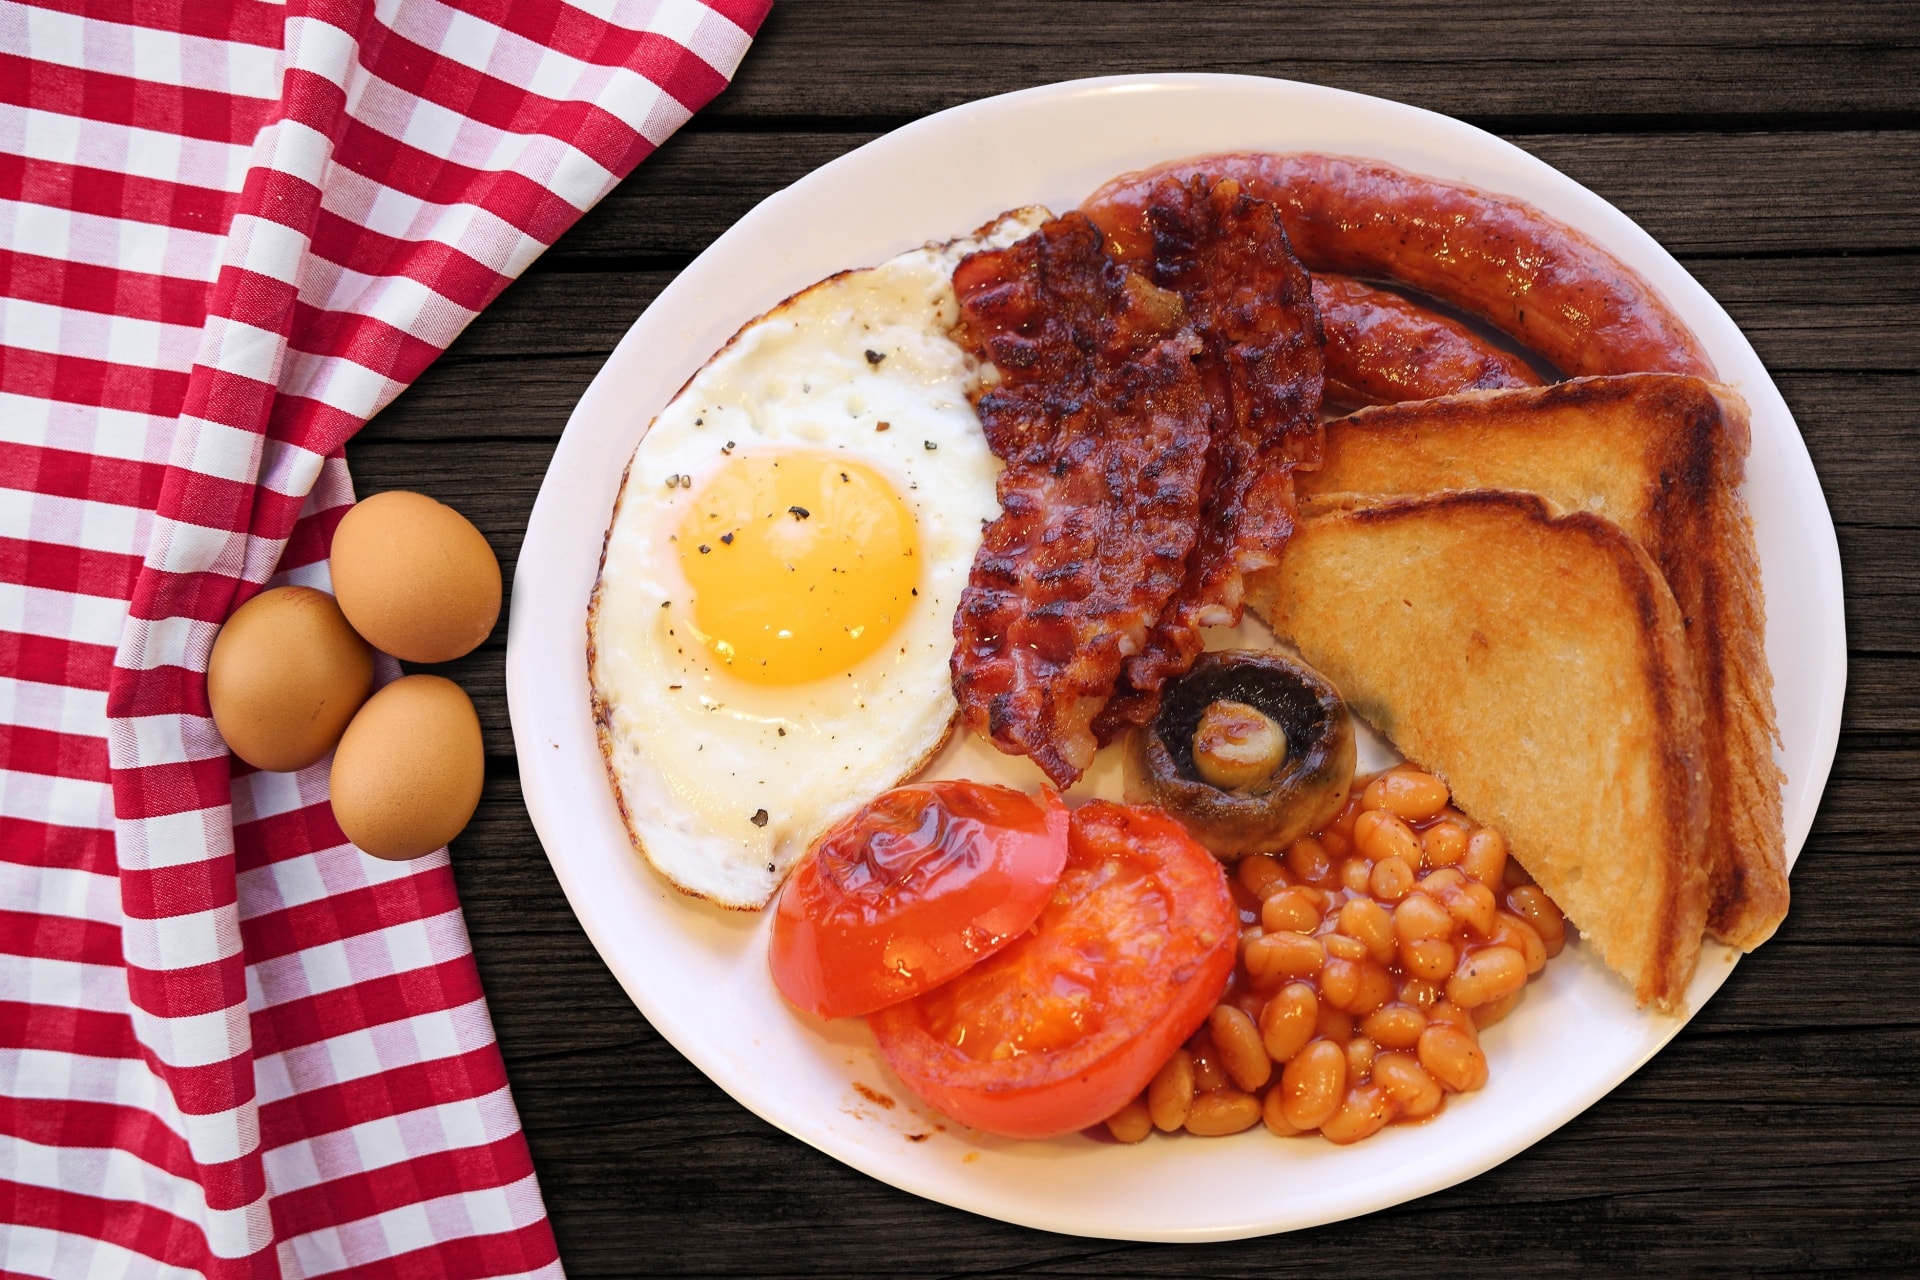 Estudio sugiere que desayunar huevo con tocino ayuda a bajar de peso | N+